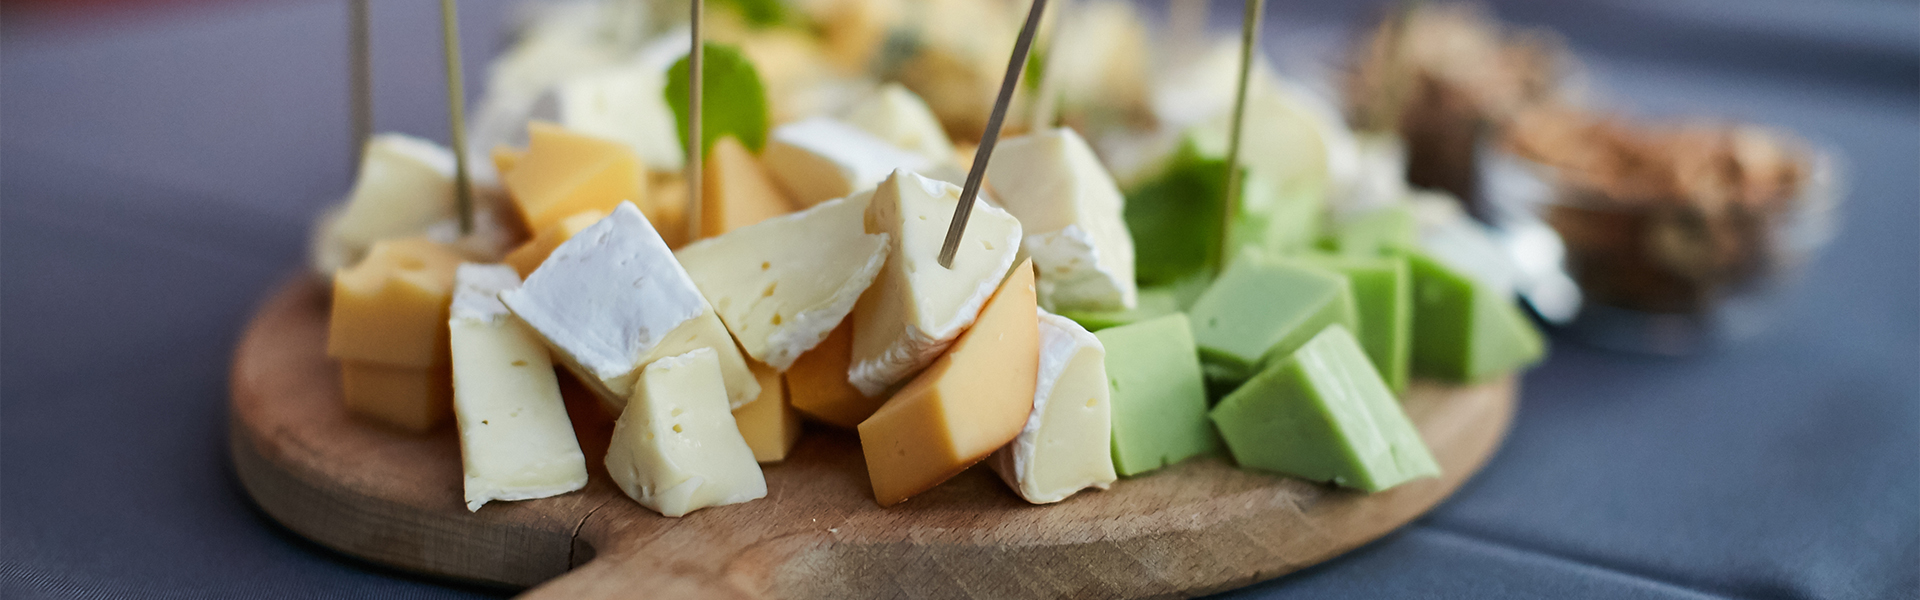 ¿Cómo cuidar del queso y aprovechar las sobras?